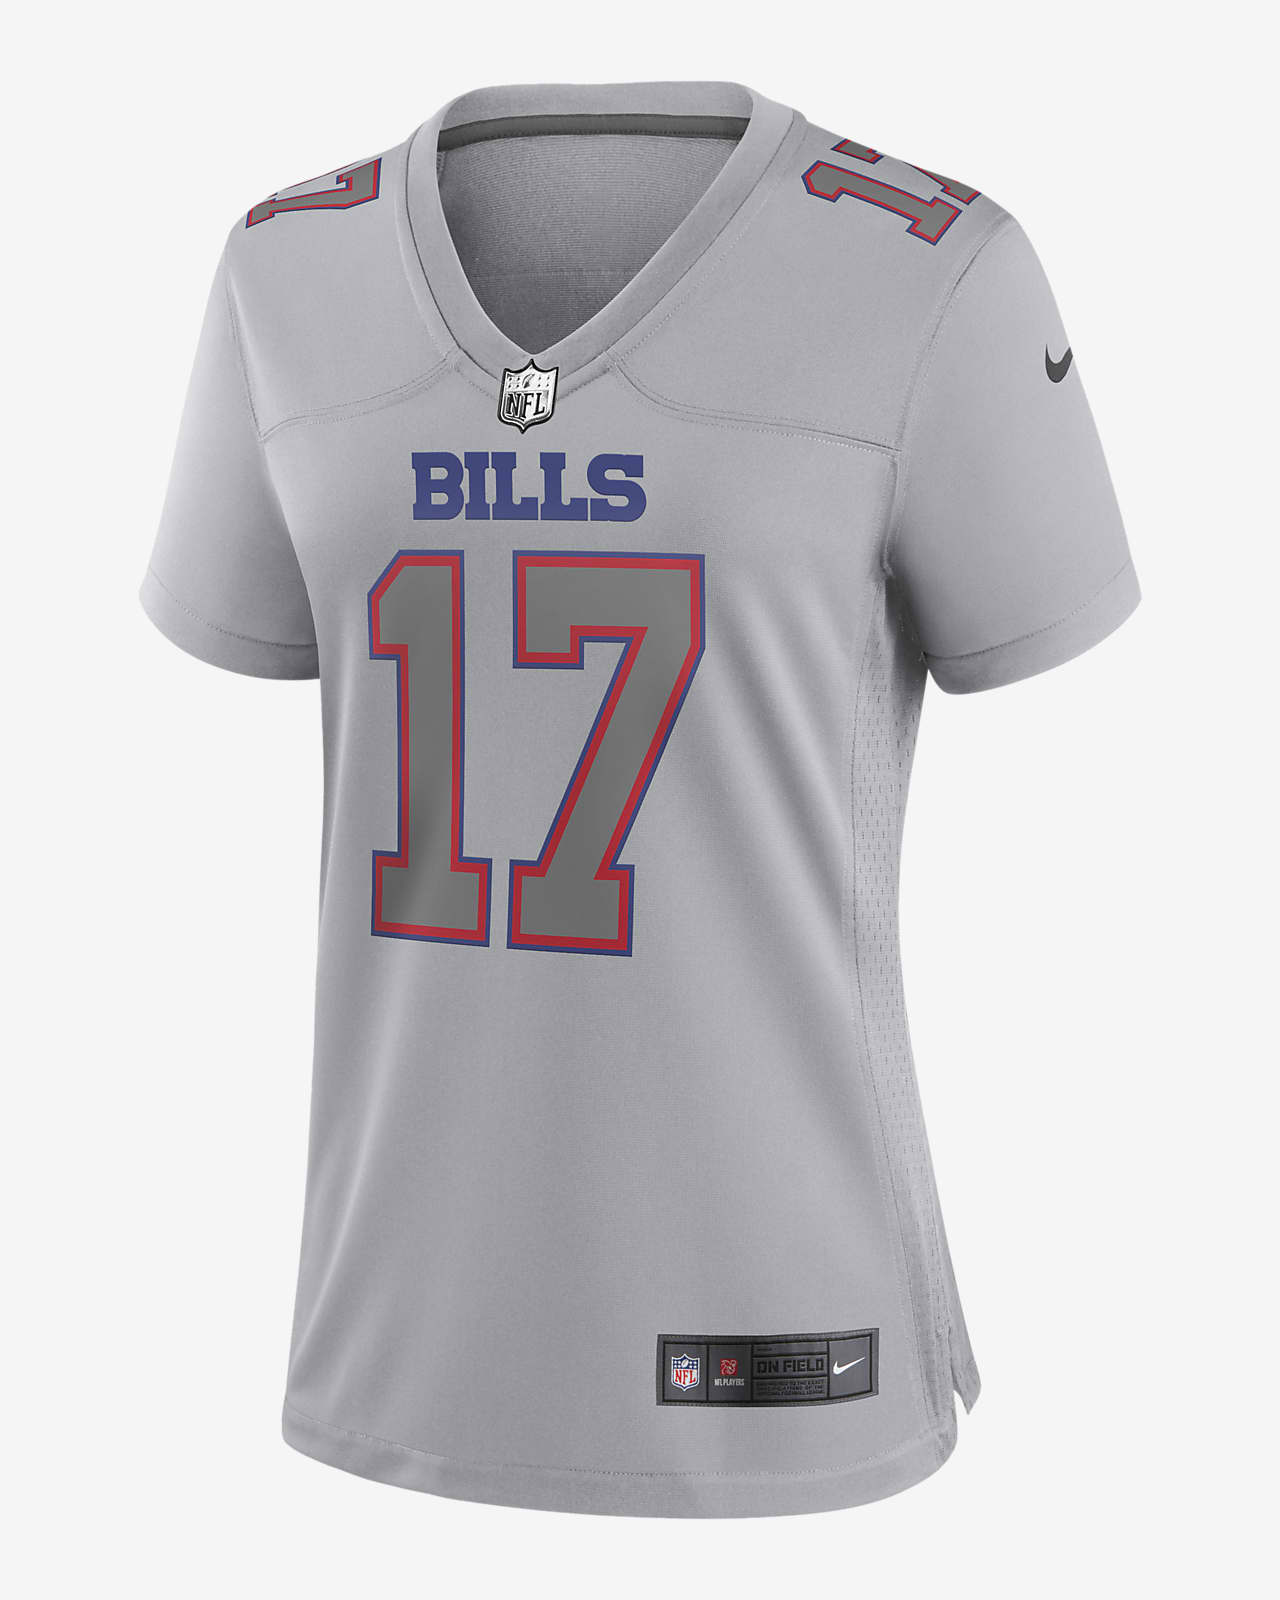 NFL Buffalo Bills Atmosphere (Josh Allen) Women's Fashion Football Jersey